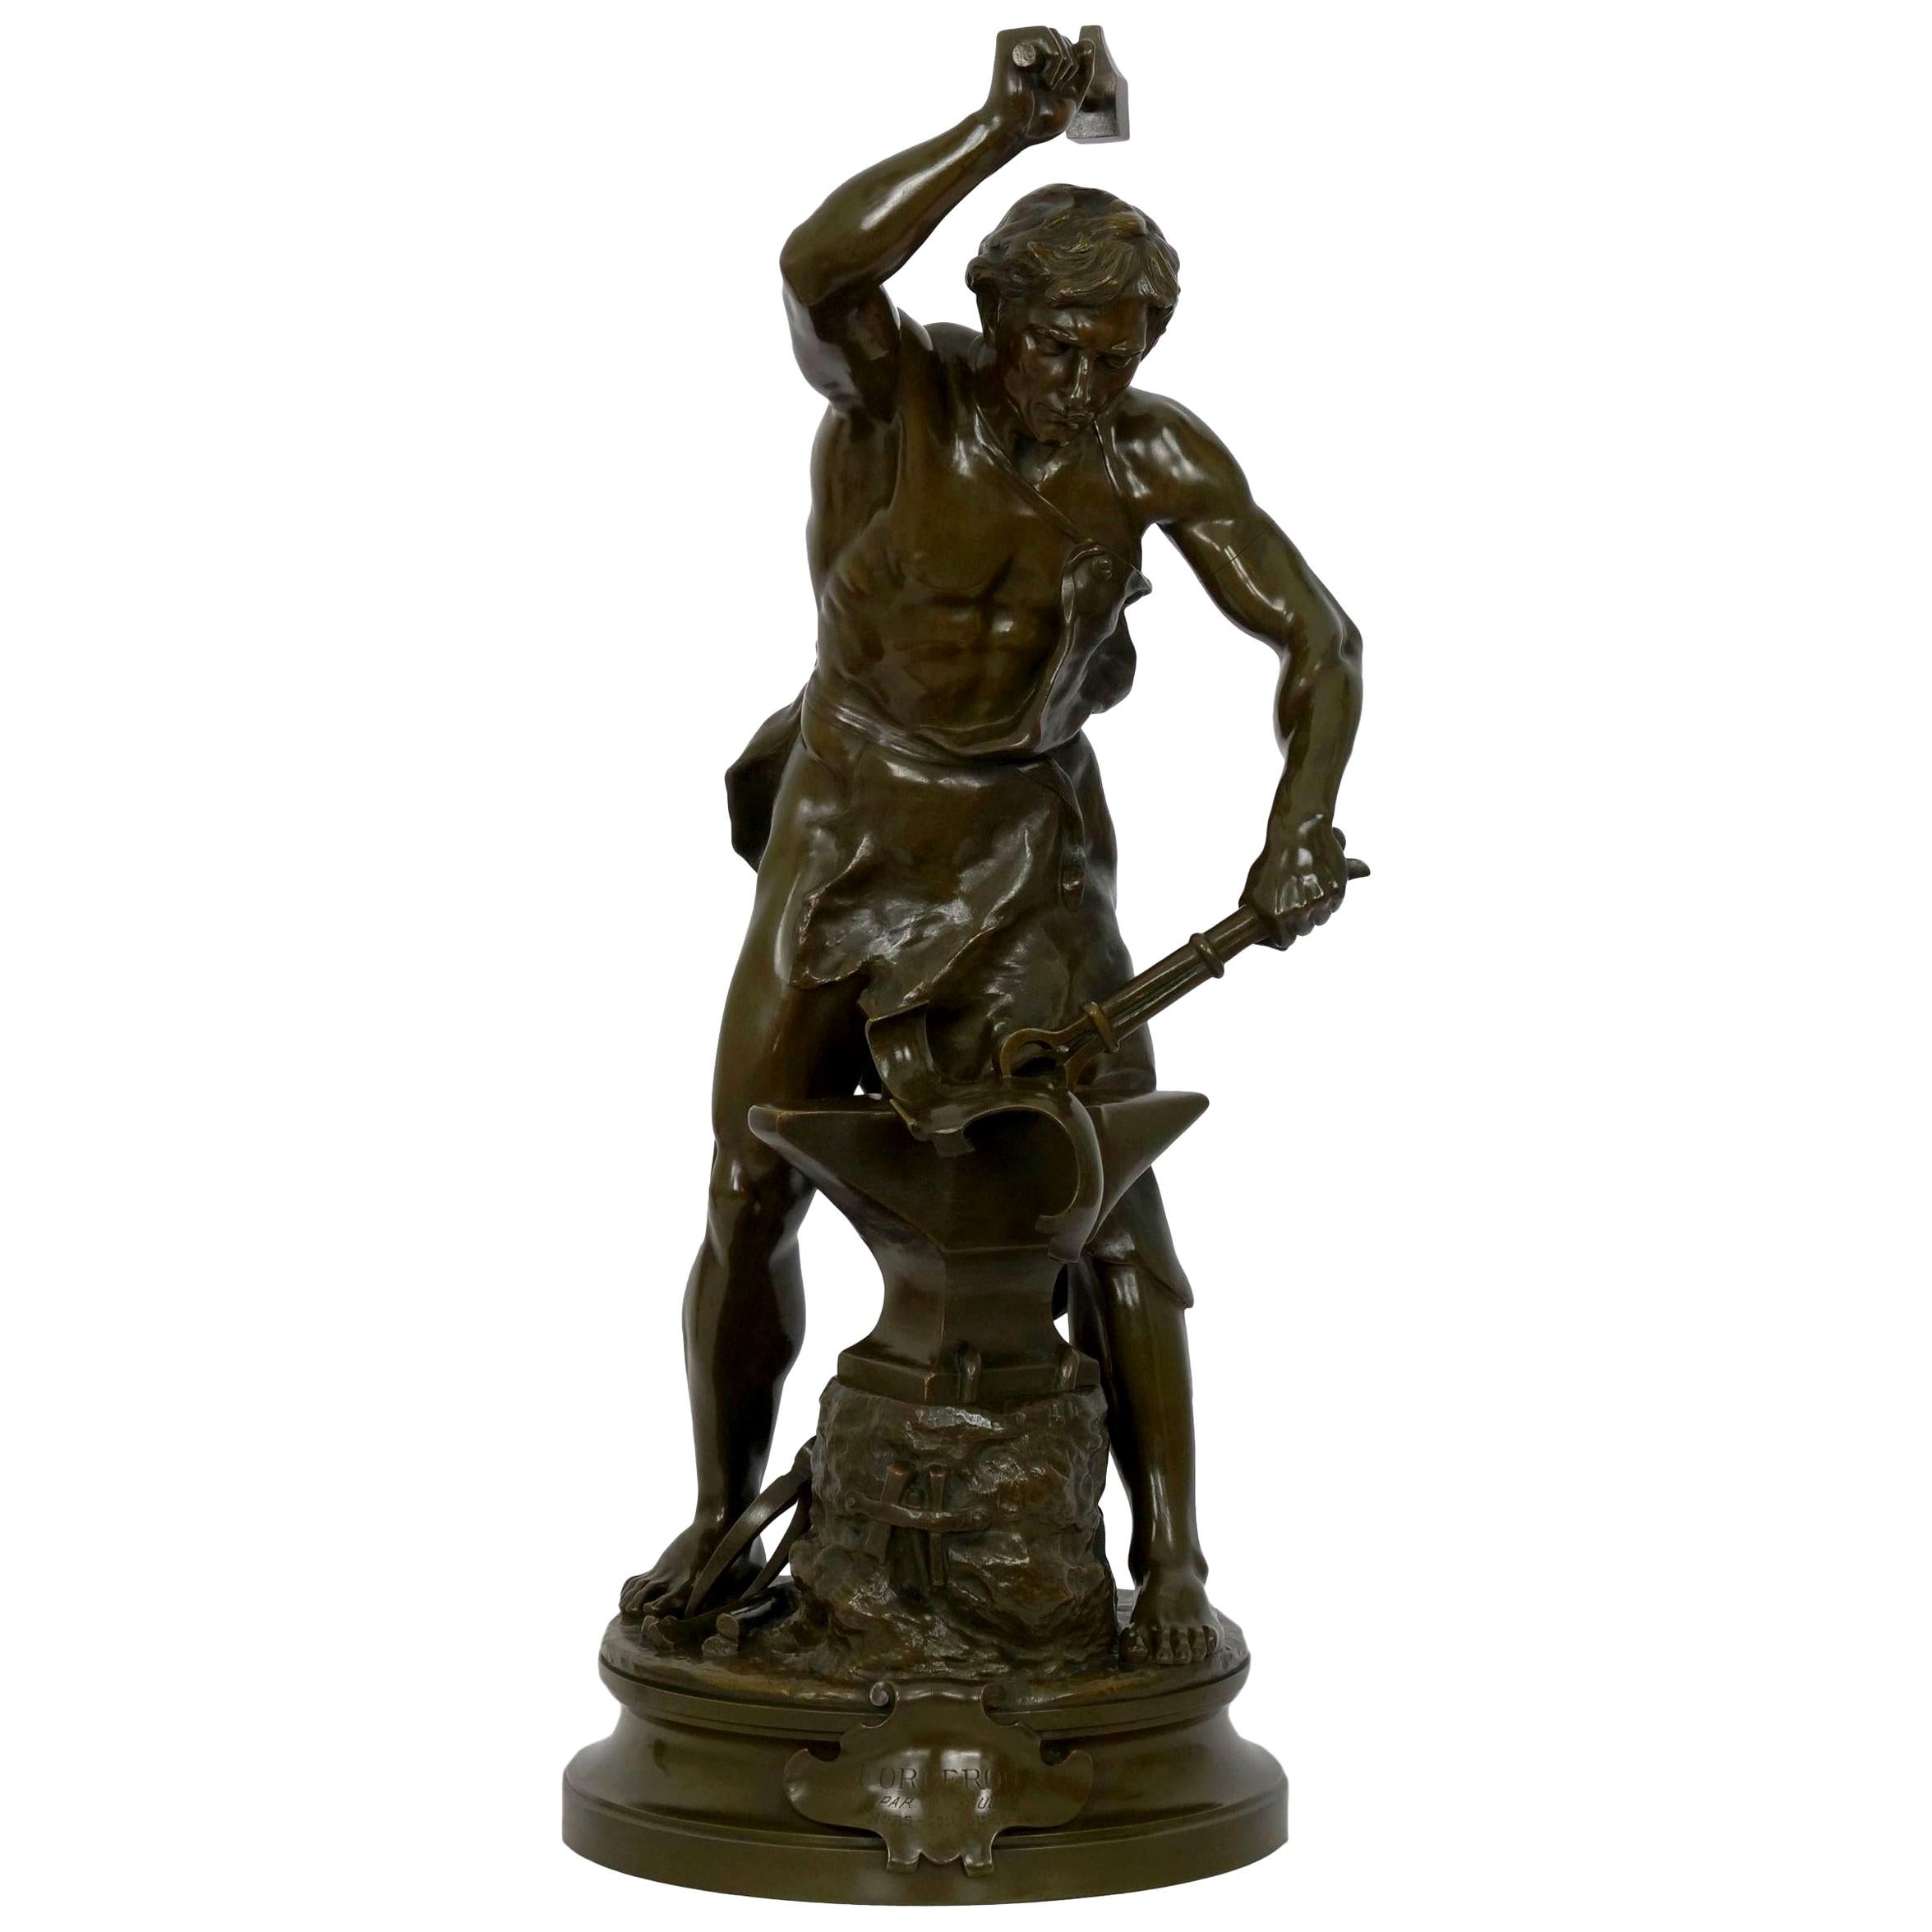 Antique French Bronze Sculpture of a Blacksmith by Adrien-Etienne Gaudez